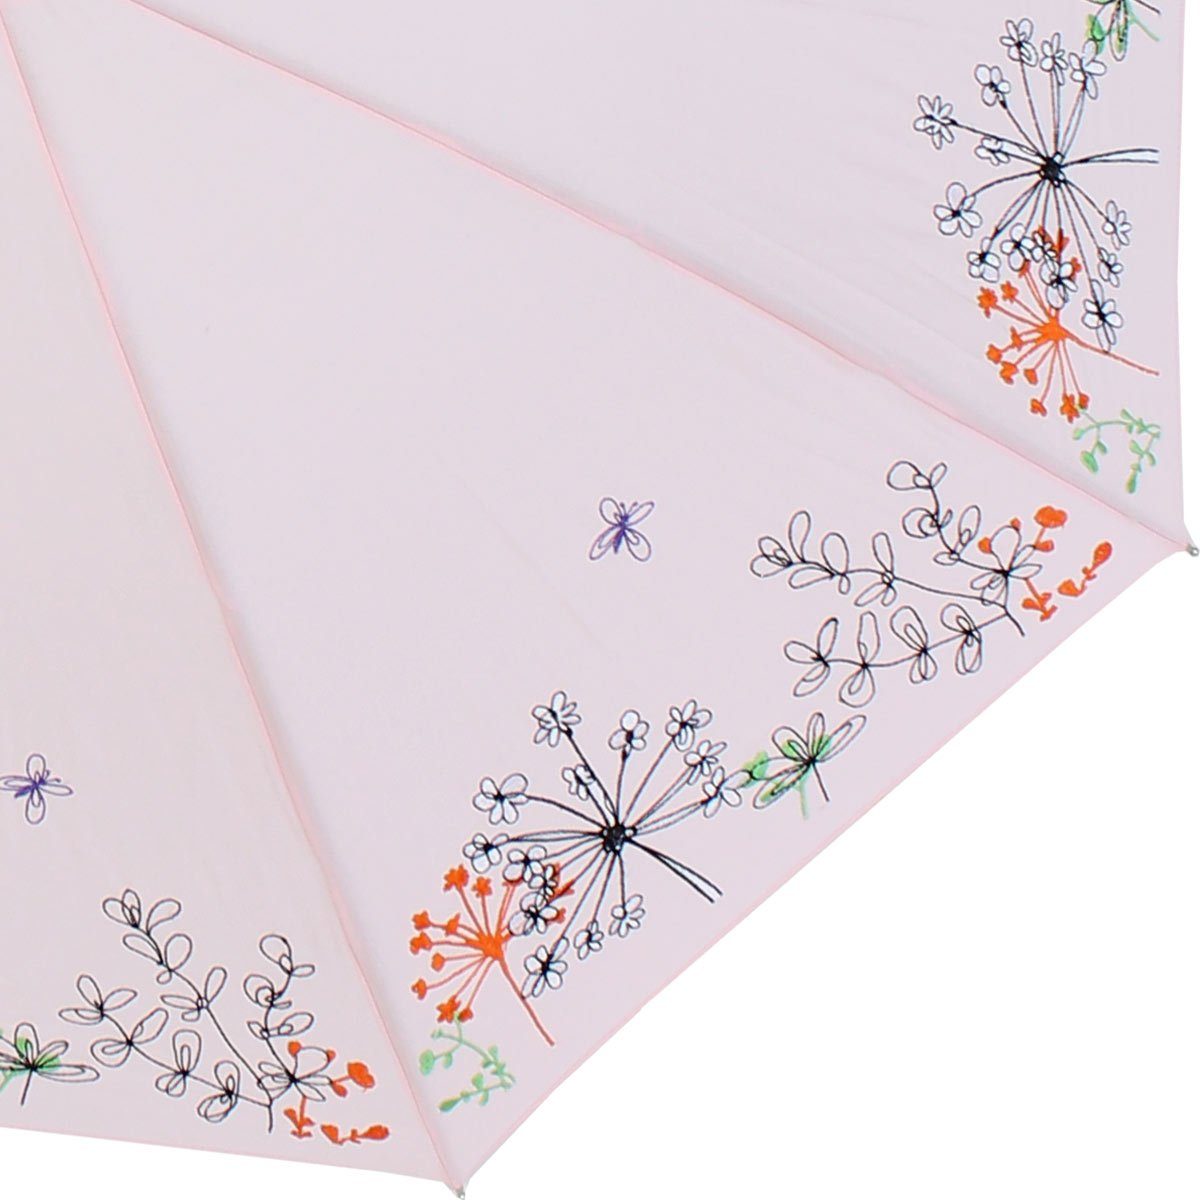 Lady transparentem Kunststoff und Griff besteht Rand ist Sonnen aus - mit doppler® rosa Butterfly, der UV Regenschirm der Schutz Langregenschirm wunderschön Wiesenblumen bestickt,